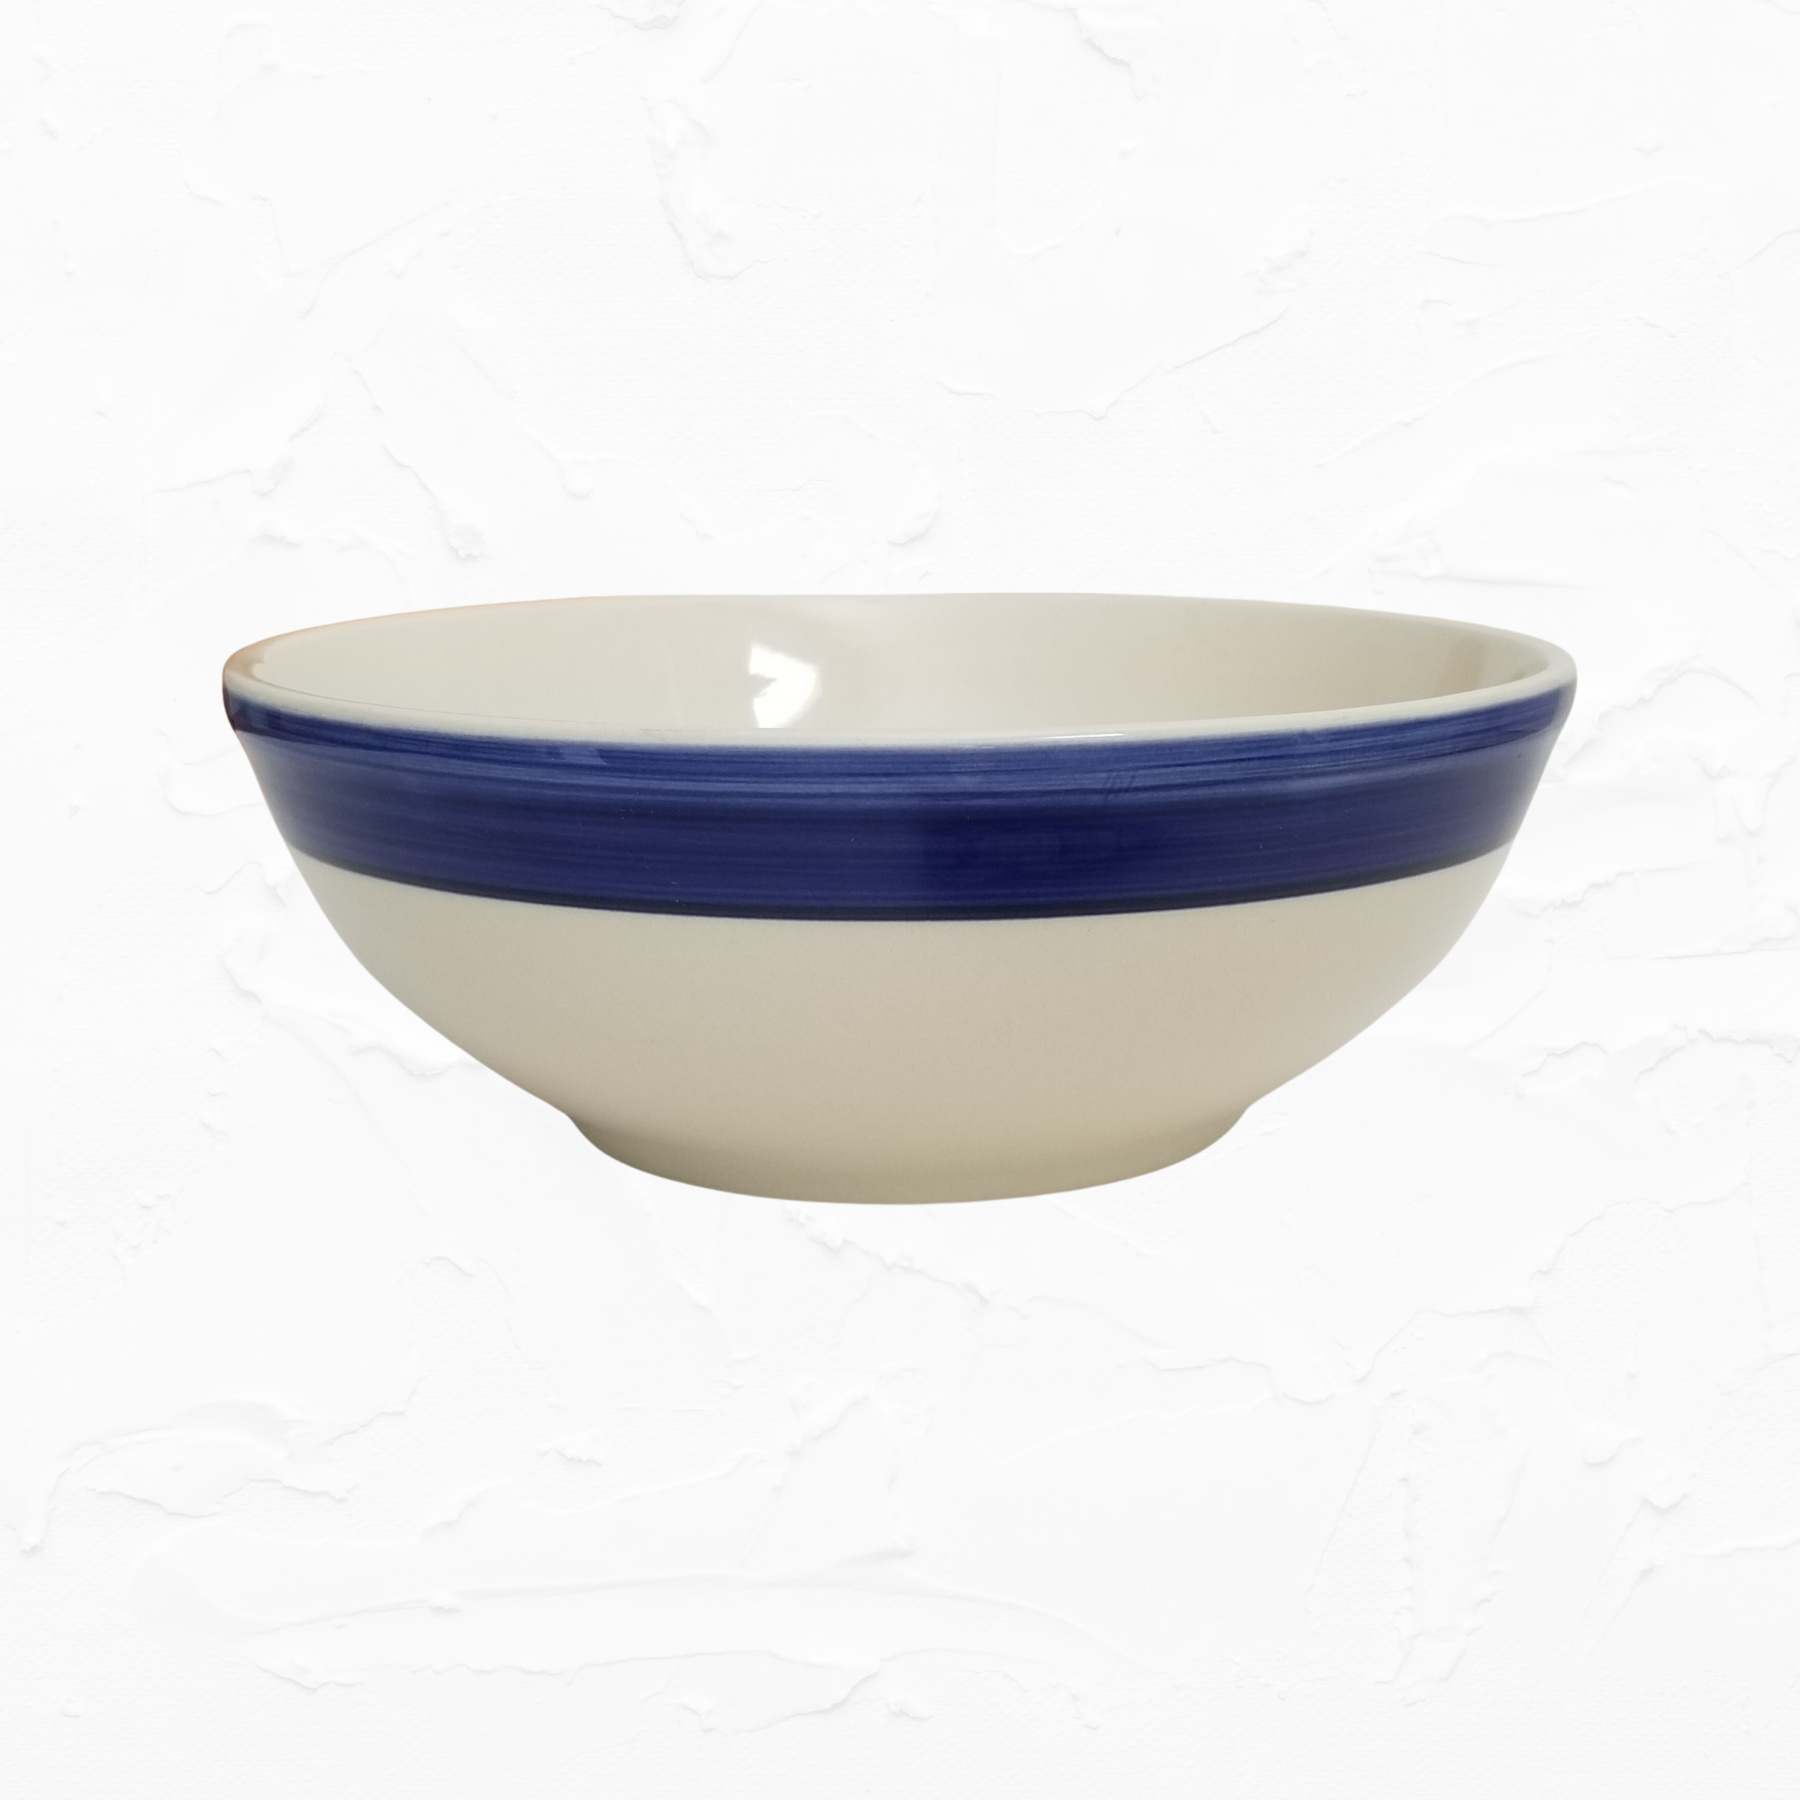 Vintage Blue + White Ceramic Mixing Bowl